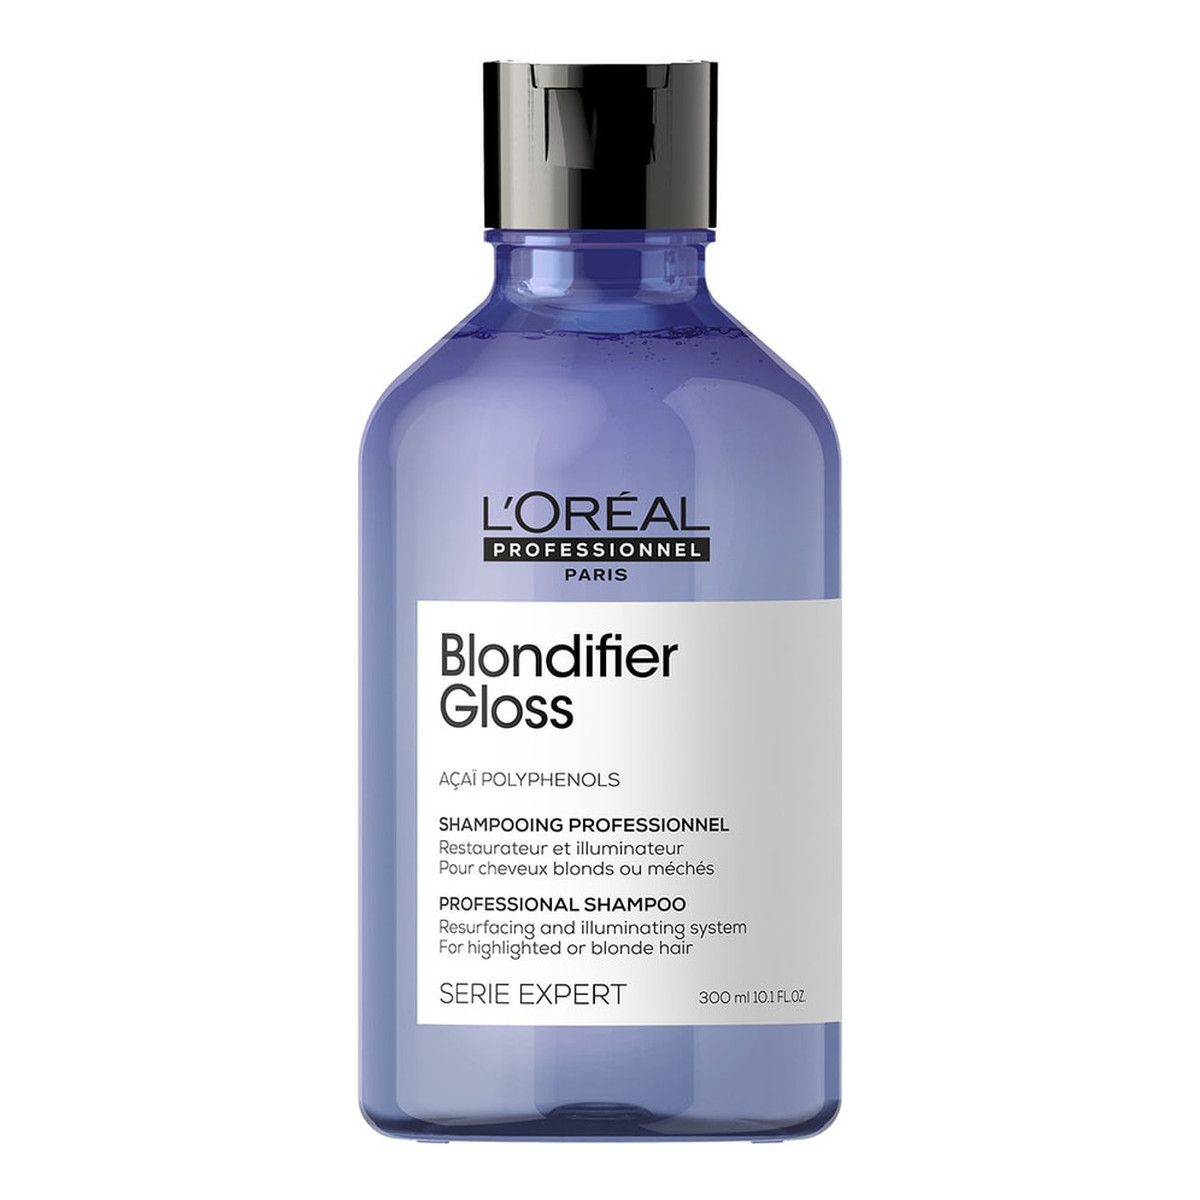 L'Oreal Paris Serie expert blondifier gloss shampoo szampon nabłyszczający do włosów blond 300ml